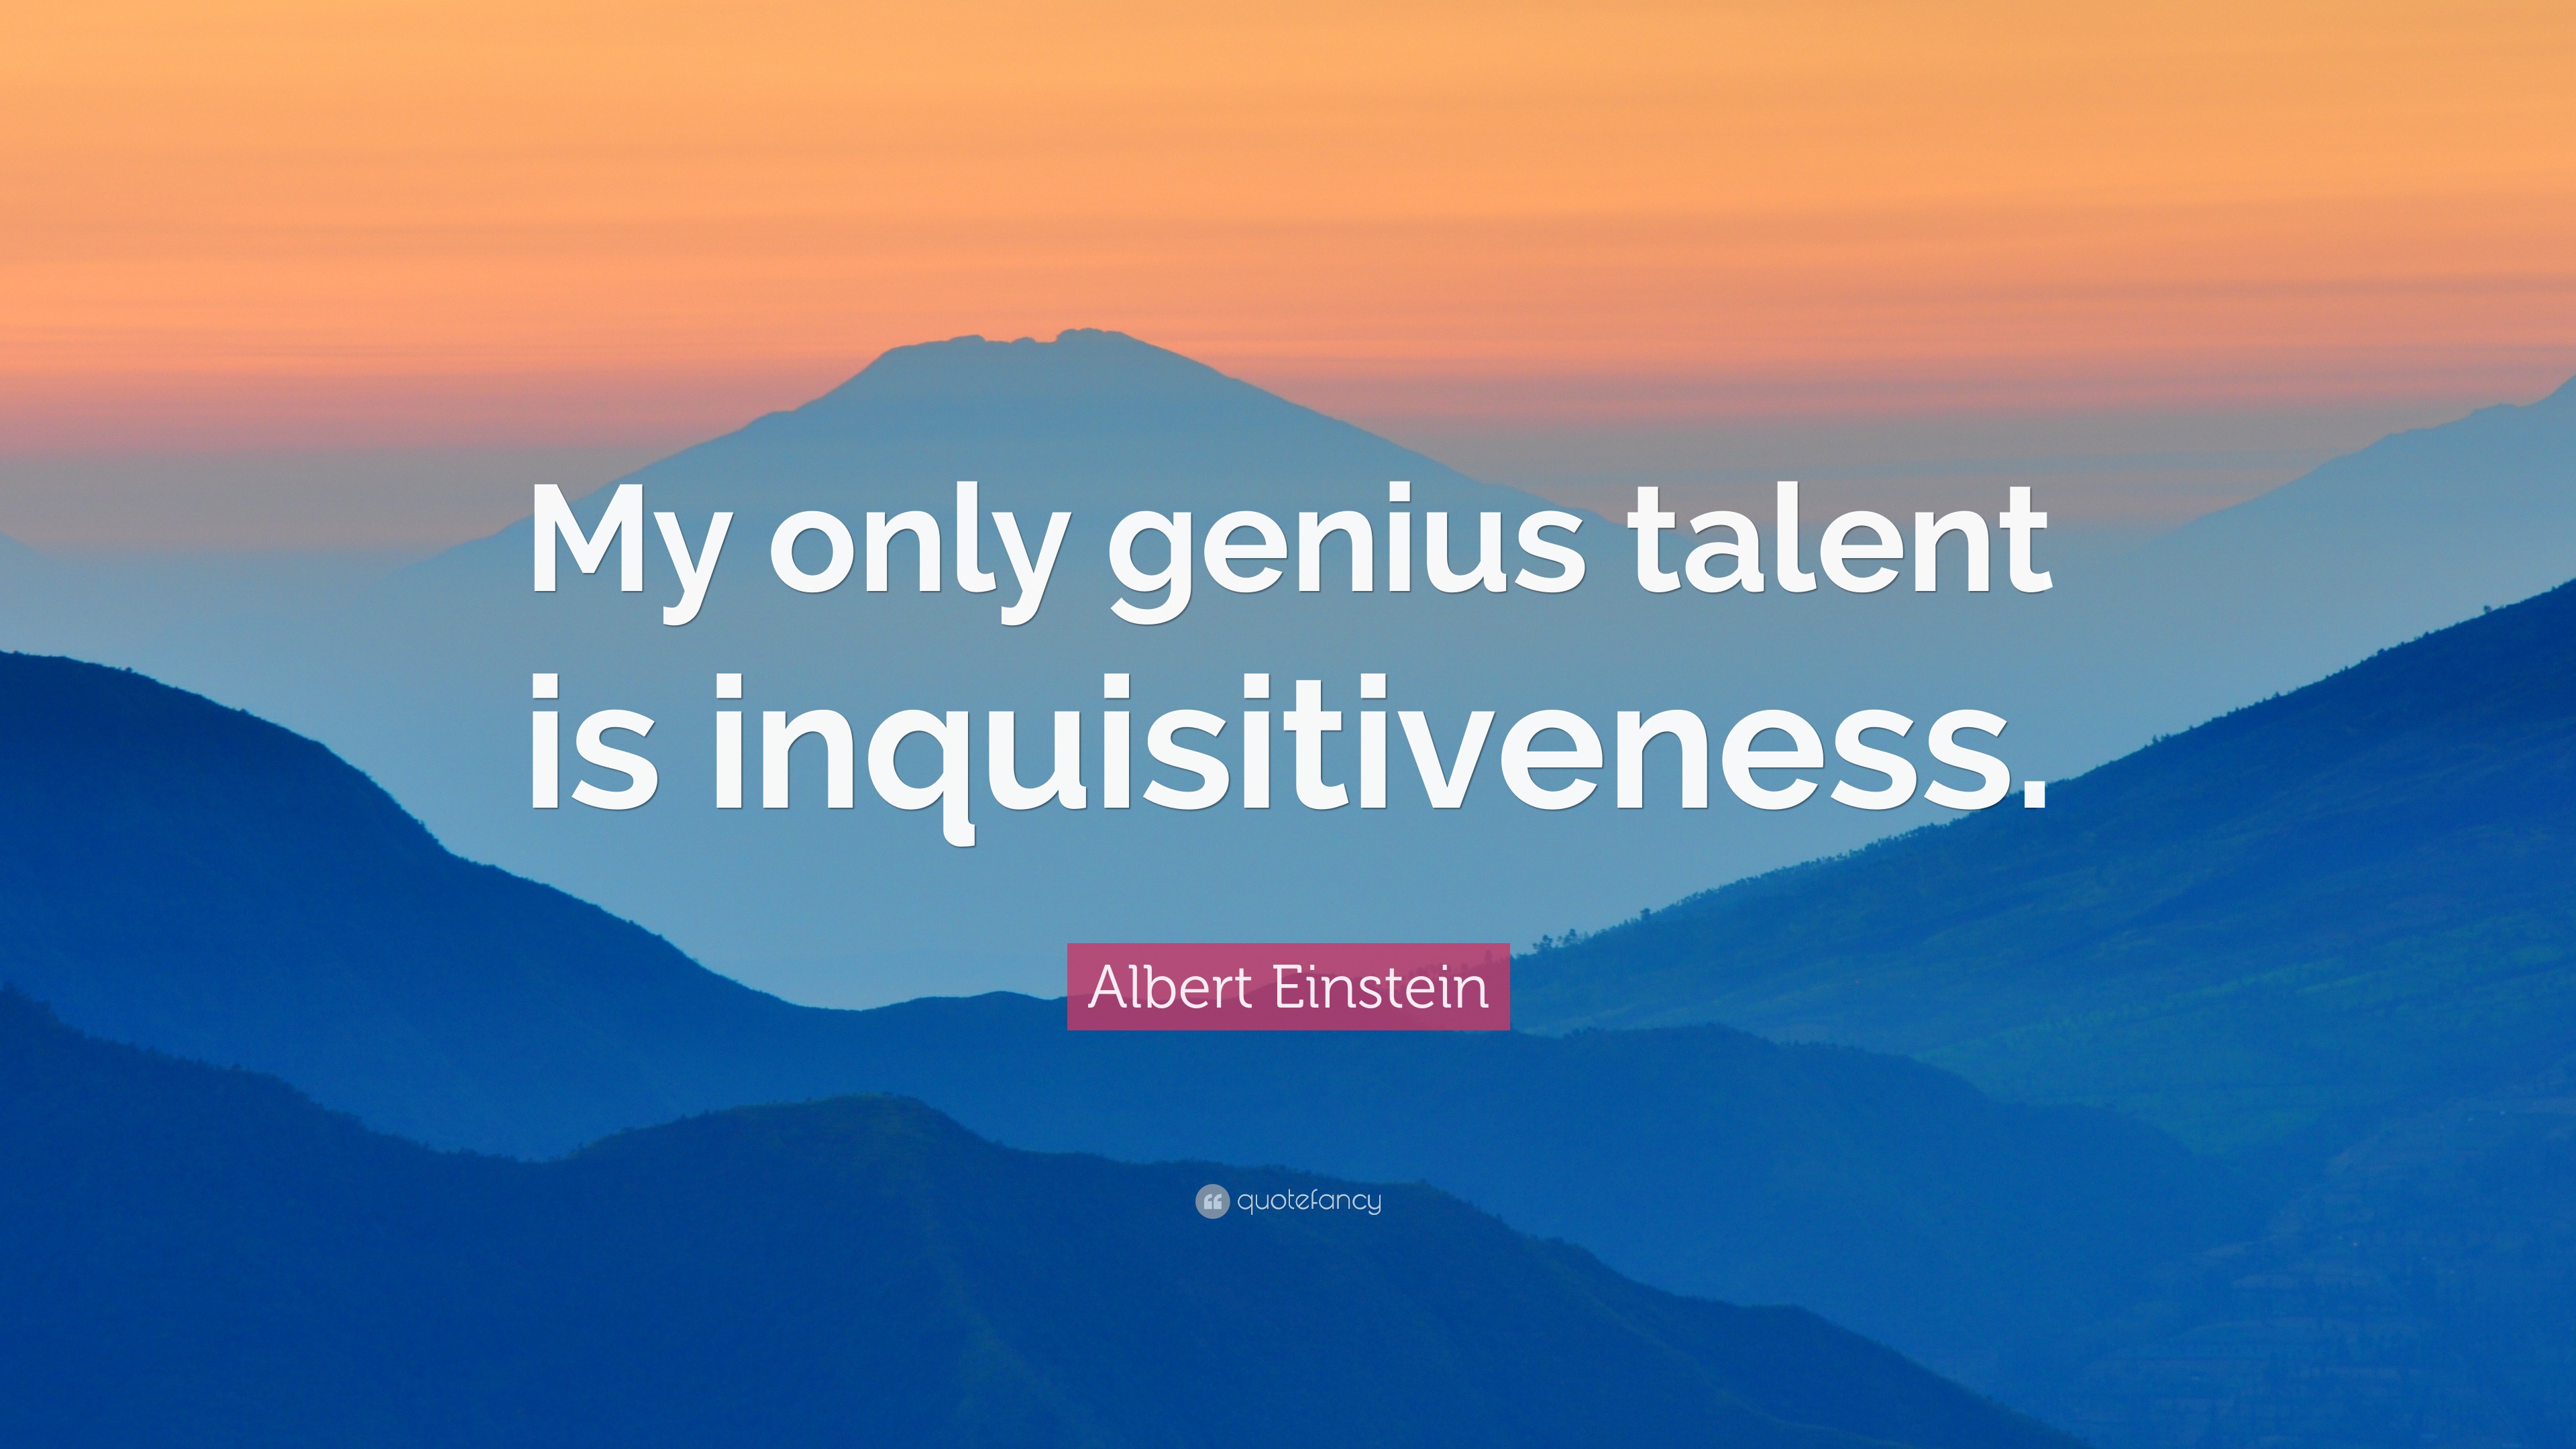 Albert Einstein Quote: “My only genius talent is inquisitiveness.”